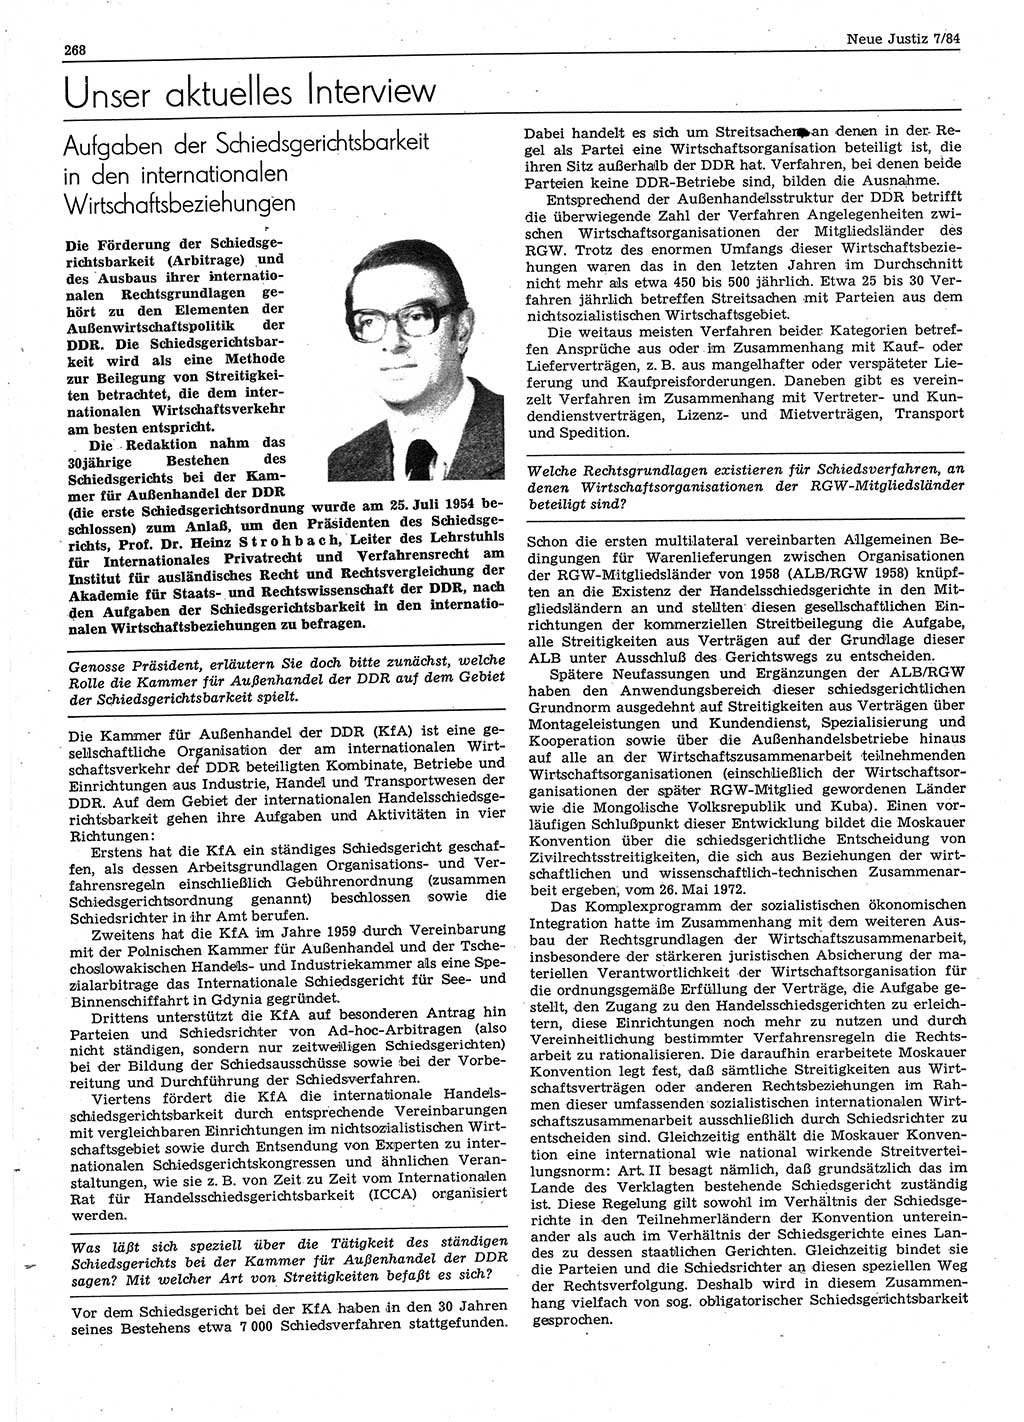 Neue Justiz (NJ), Zeitschrift für sozialistisches Recht und Gesetzlichkeit [Deutsche Demokratische Republik (DDR)], 38. Jahrgang 1984, Seite 268 (NJ DDR 1984, S. 268)